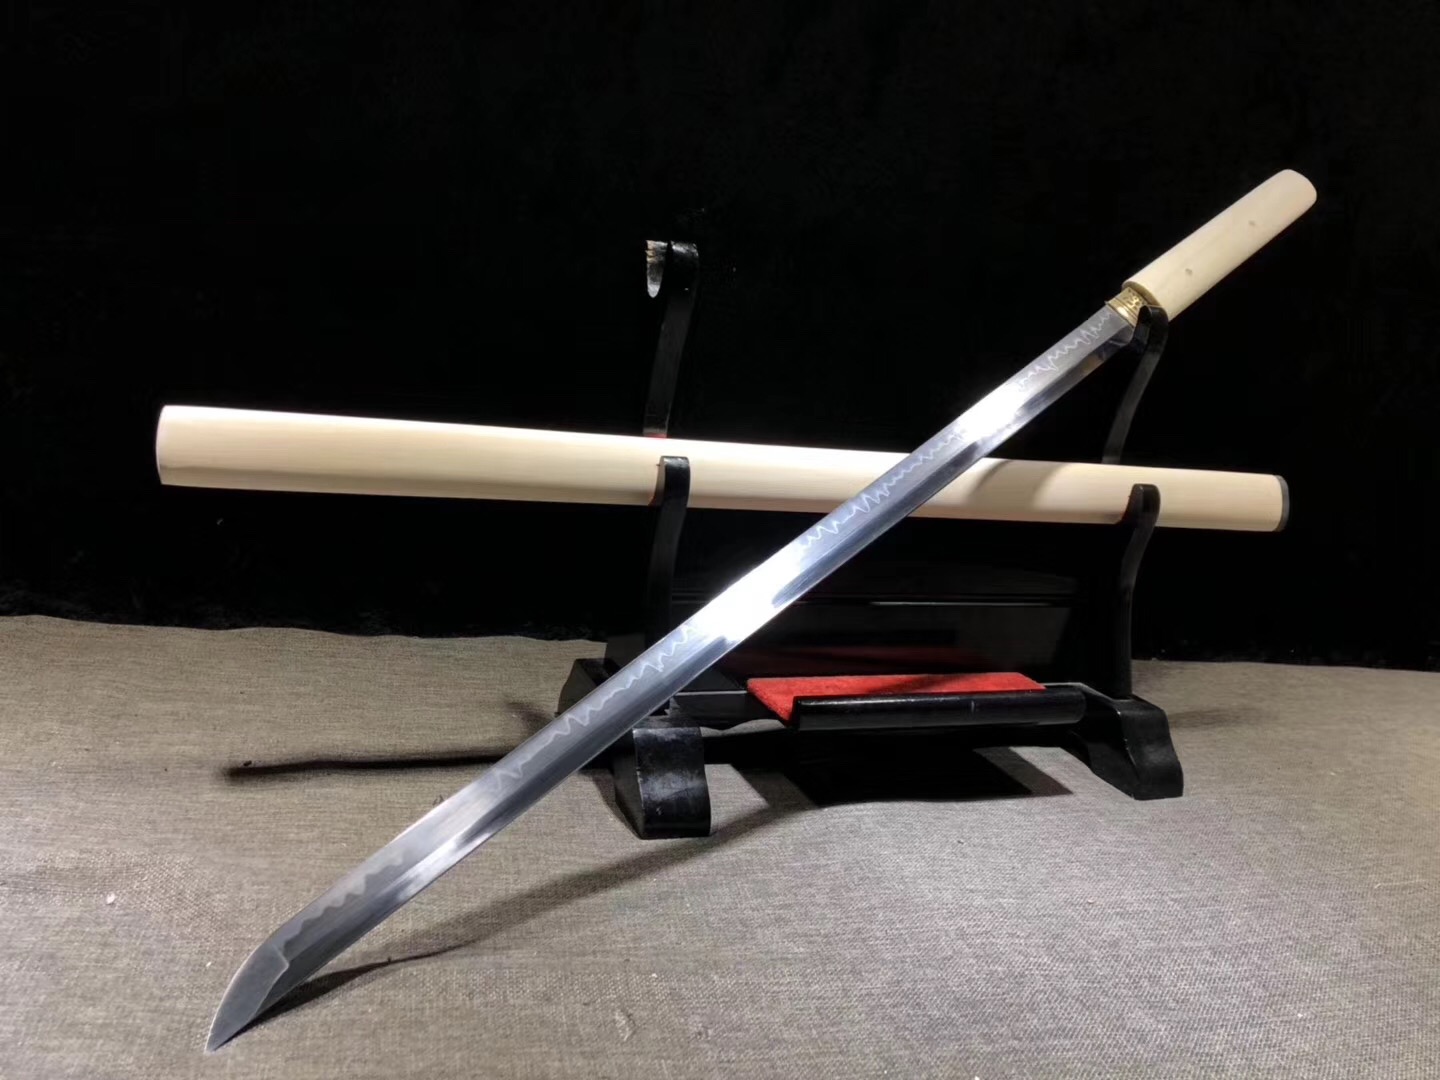 厂家货源 桃木剑带套剑单龙桃木剑 批发木质工艺品WYTJ02-阿里巴巴